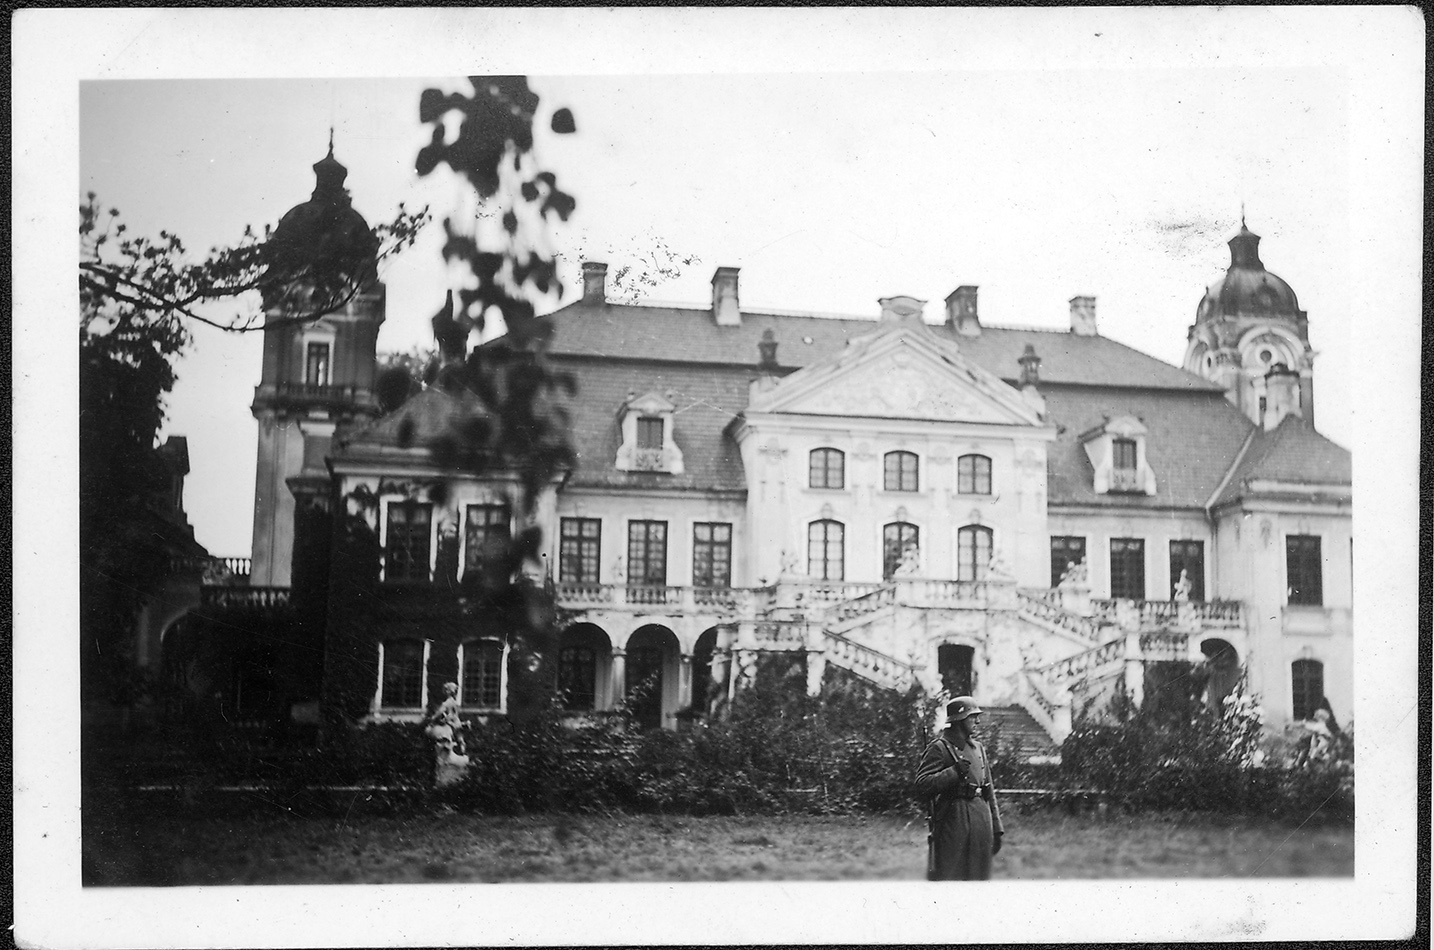 2.	Fotografia archiwalna z lat 40. XX wieku przedstawia pałac w Kozłówce od strony ogrodu. Pałac jednopiętrowy, z wysuniętą częścią środkową , przy której duże schody oraz dwiema wieżami po obu stronach. Na tle pałacu stojący mężczyzna w mundurze żołnierza Wermachtu. Fotografia czarno-biała.